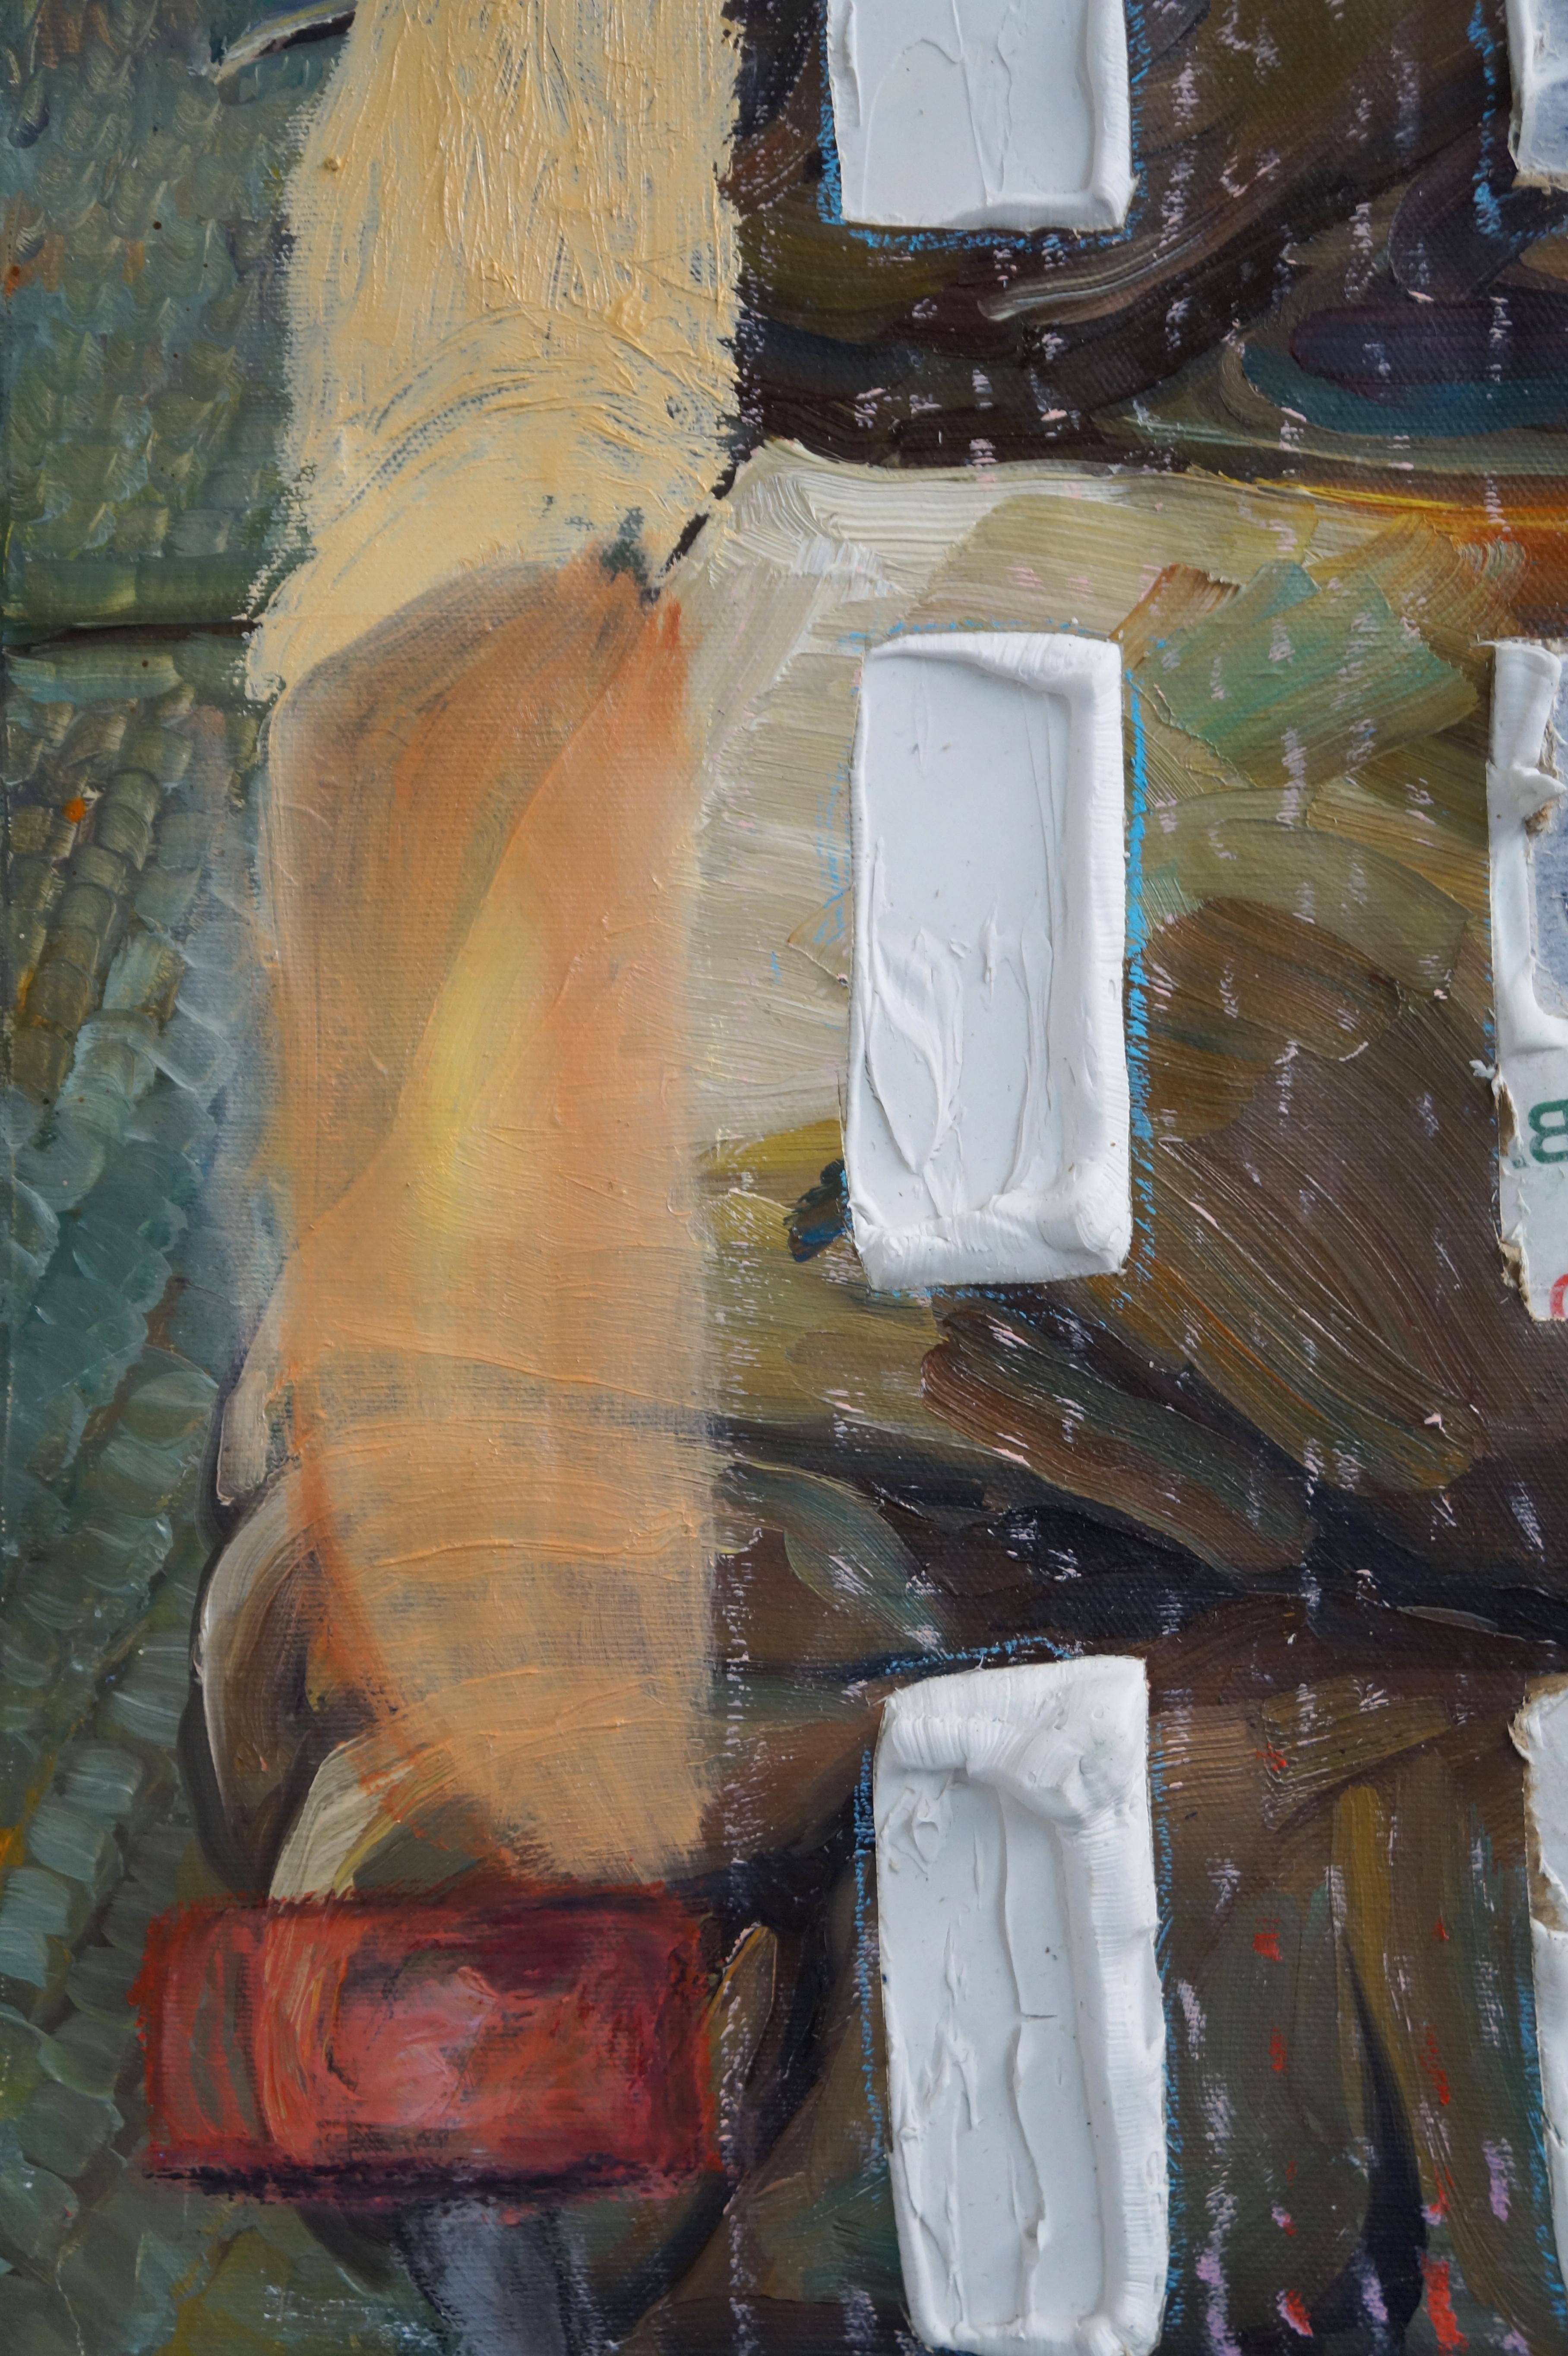 LAWN CHAIR WITH WEISSES T-SHIRT - Abstrakt figurativ, strukturiert, braun, rot, grün (Schwarz), Figurative Painting, von Eleanor Aldrich